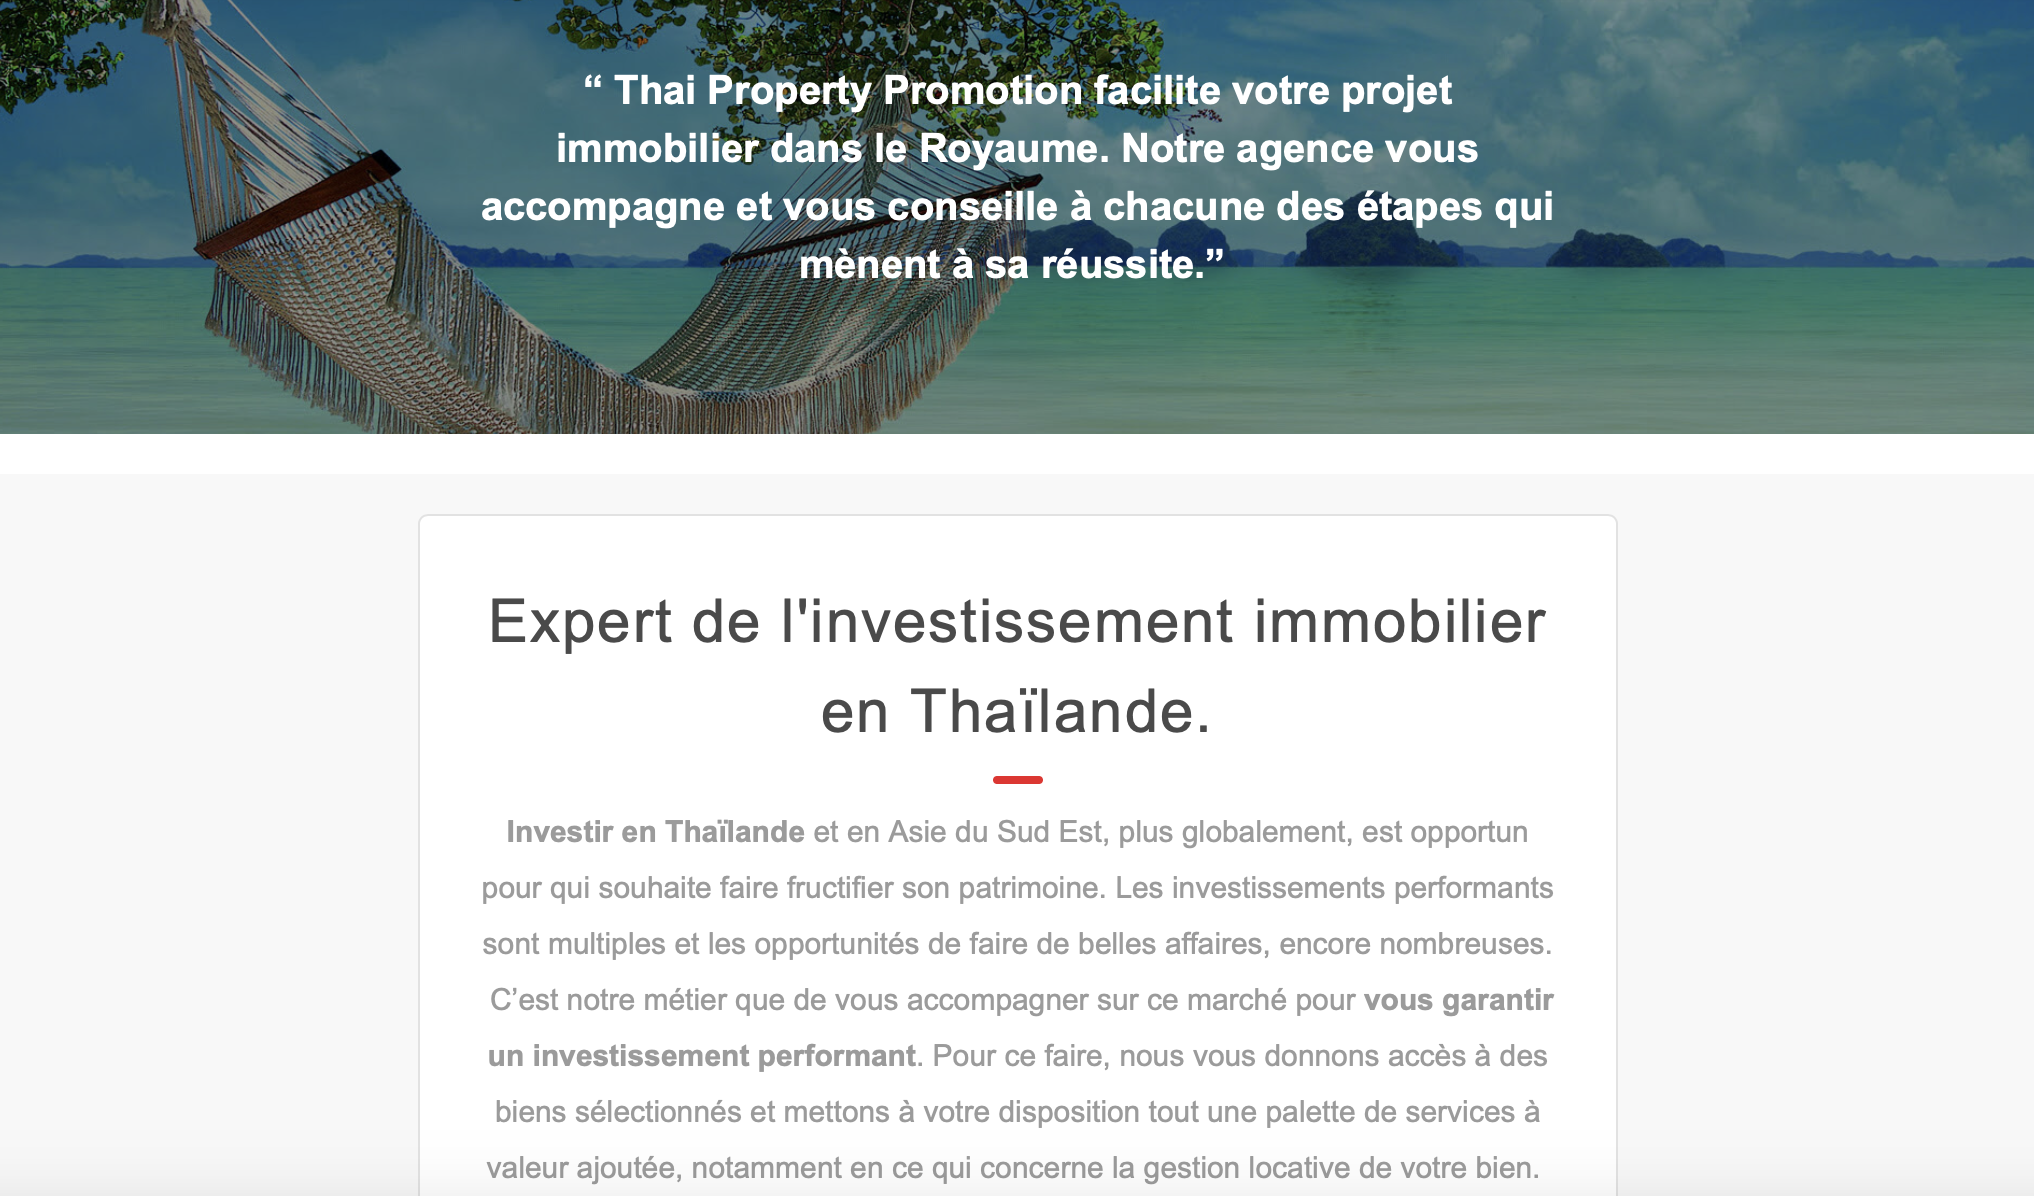 Thaï Property qui vante son expérience en matière de placements immobiliers, voici le genre de mails reçus par de futurs investisseurs réunionnais